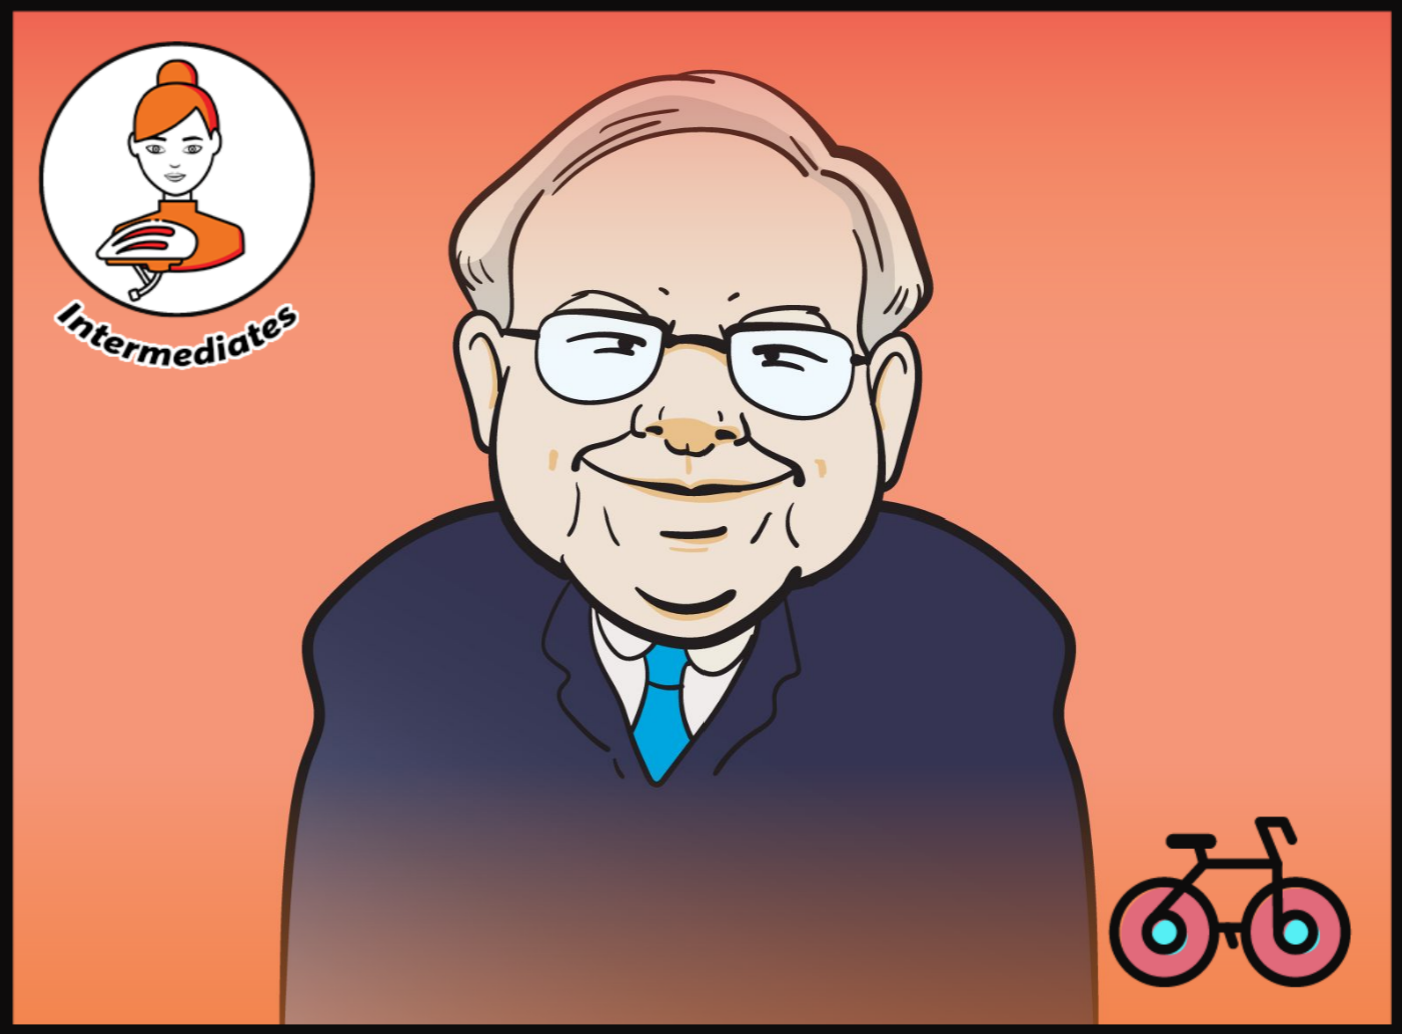 Weekend Reading - The Untold Story Of Warren Buffett